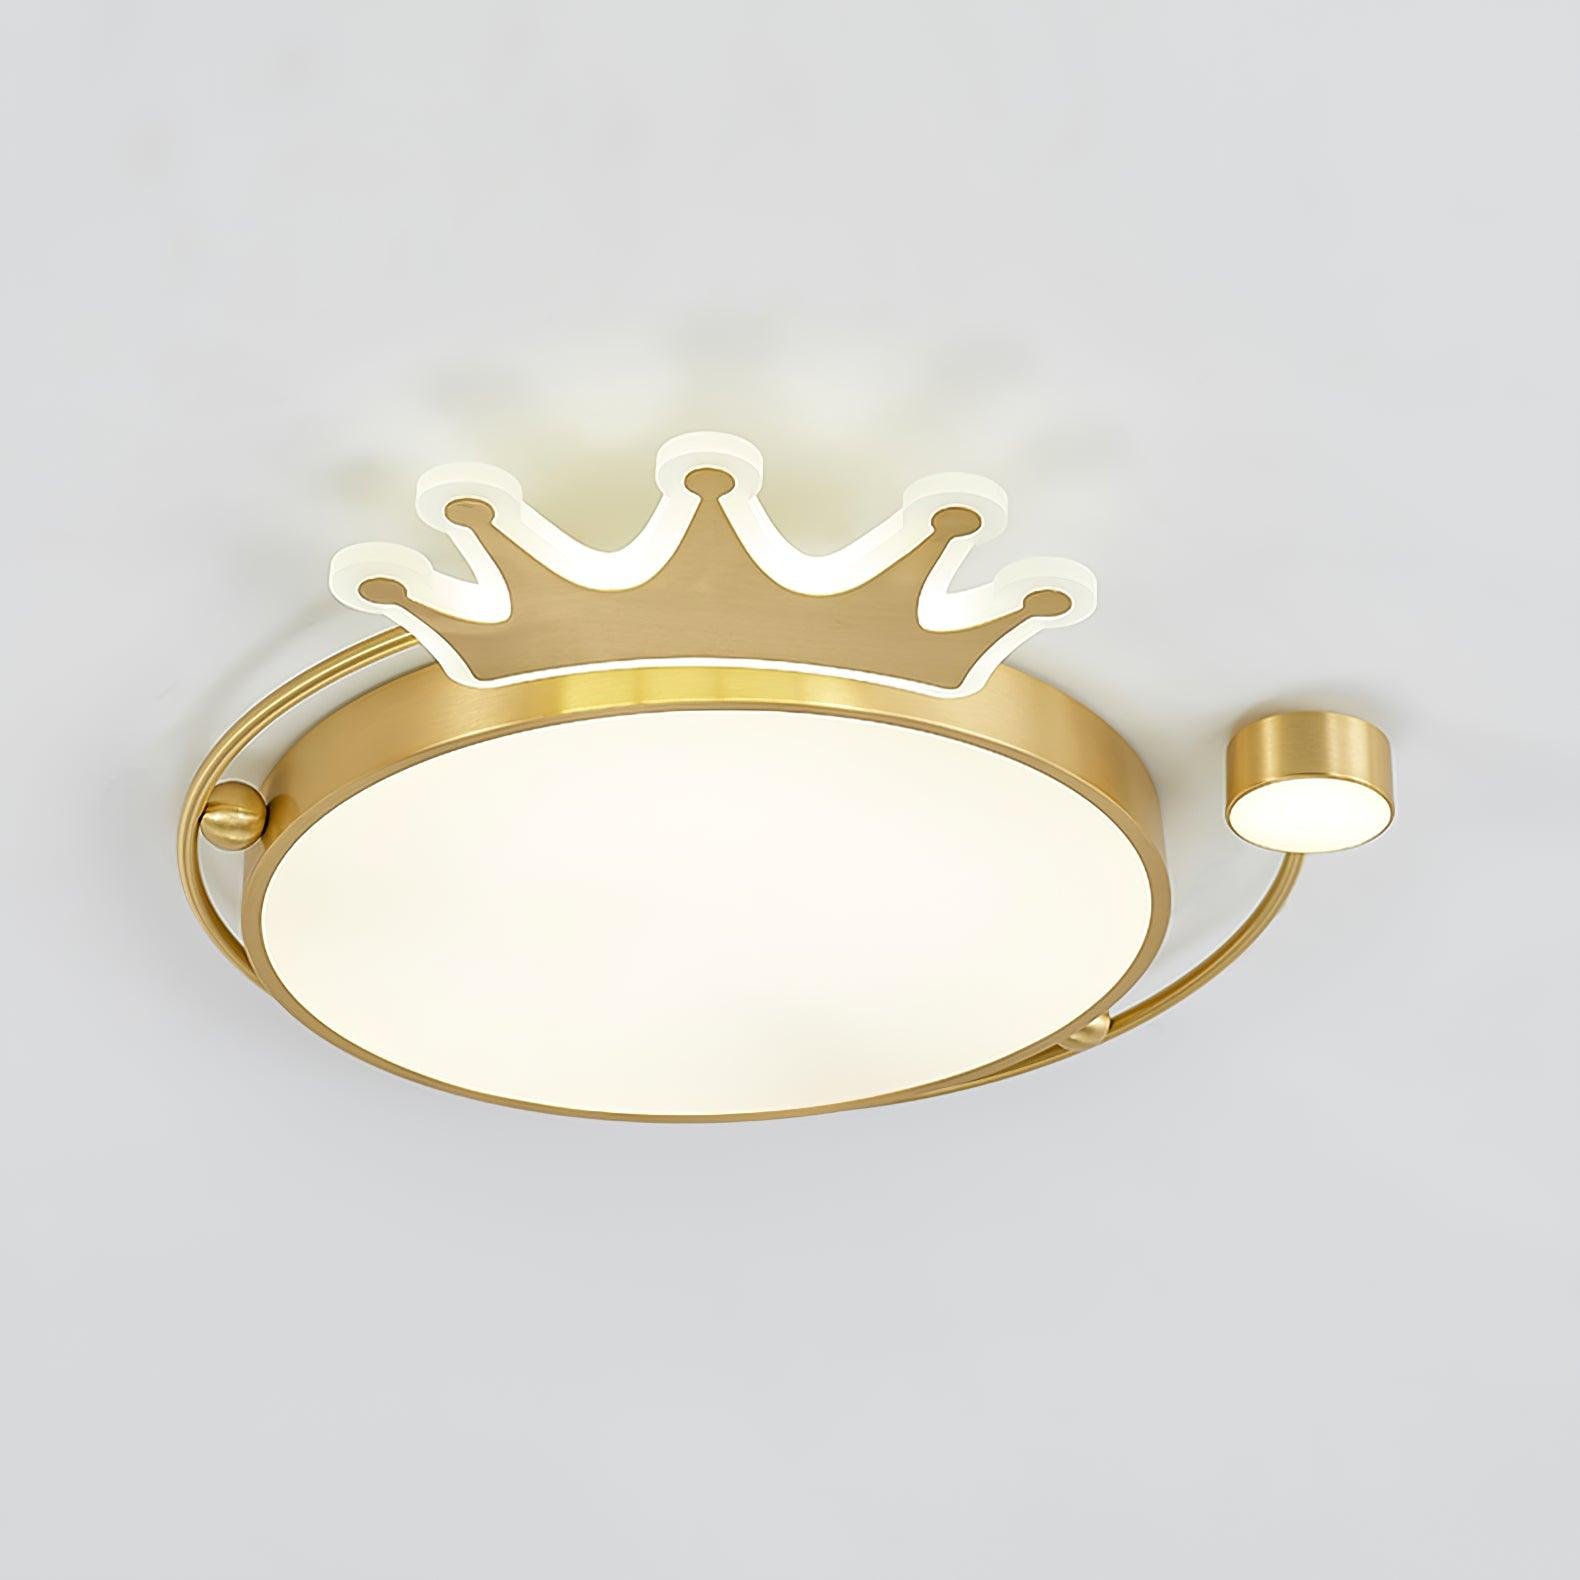 Ceiling Light Crown Brass Cool Light (24.4" Diameter x 1.6" Height / 62cm Dia x 4cm H)